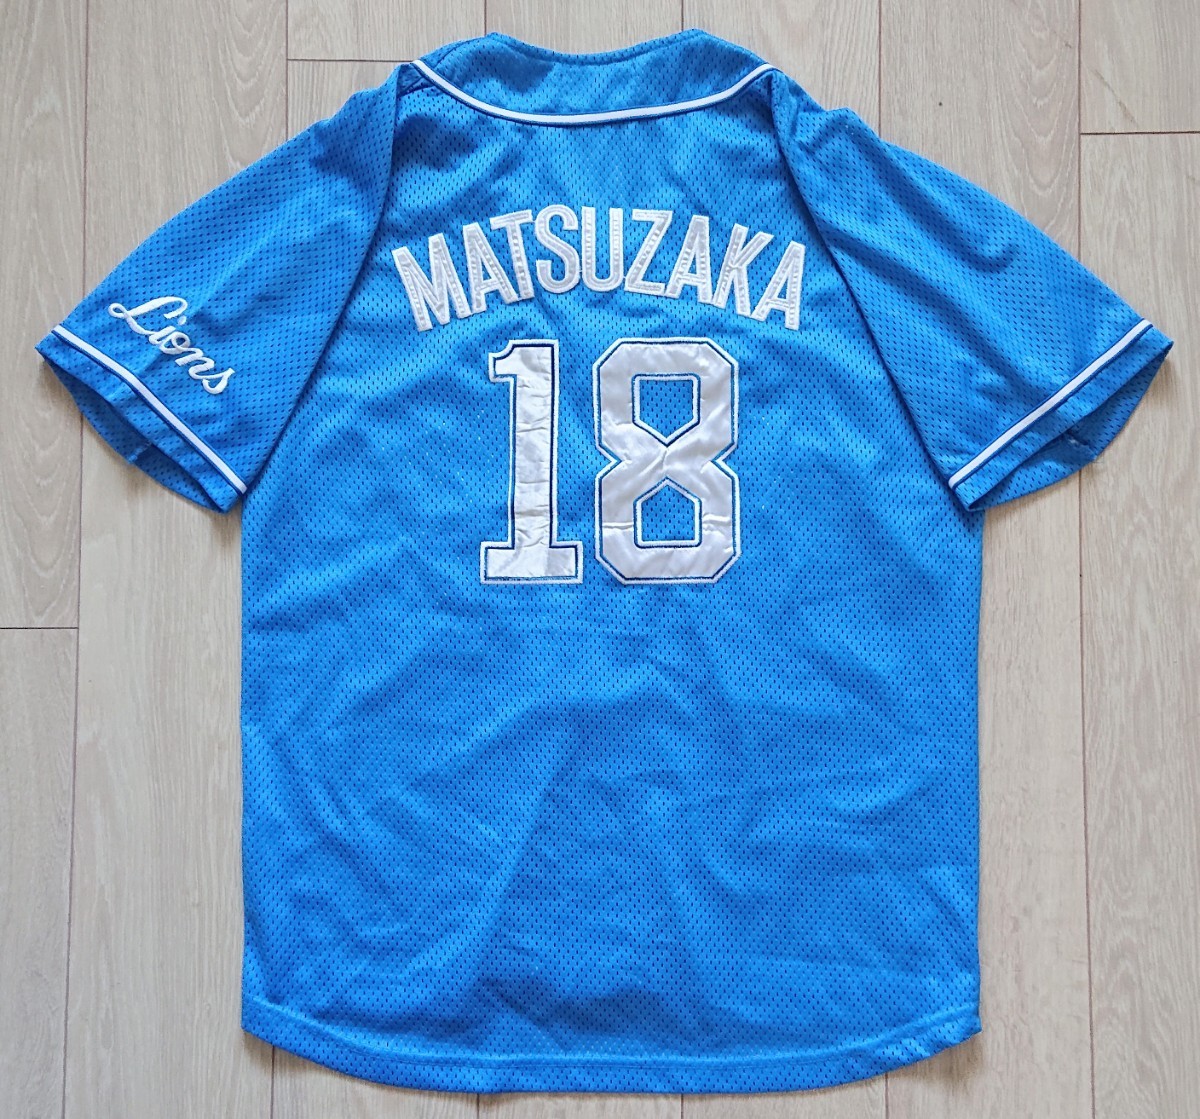 ランキング上位のプレゼント野球応援グッズ 希少 松坂大輔 西武ライオンズ 18番 ユニフォーム 2001年